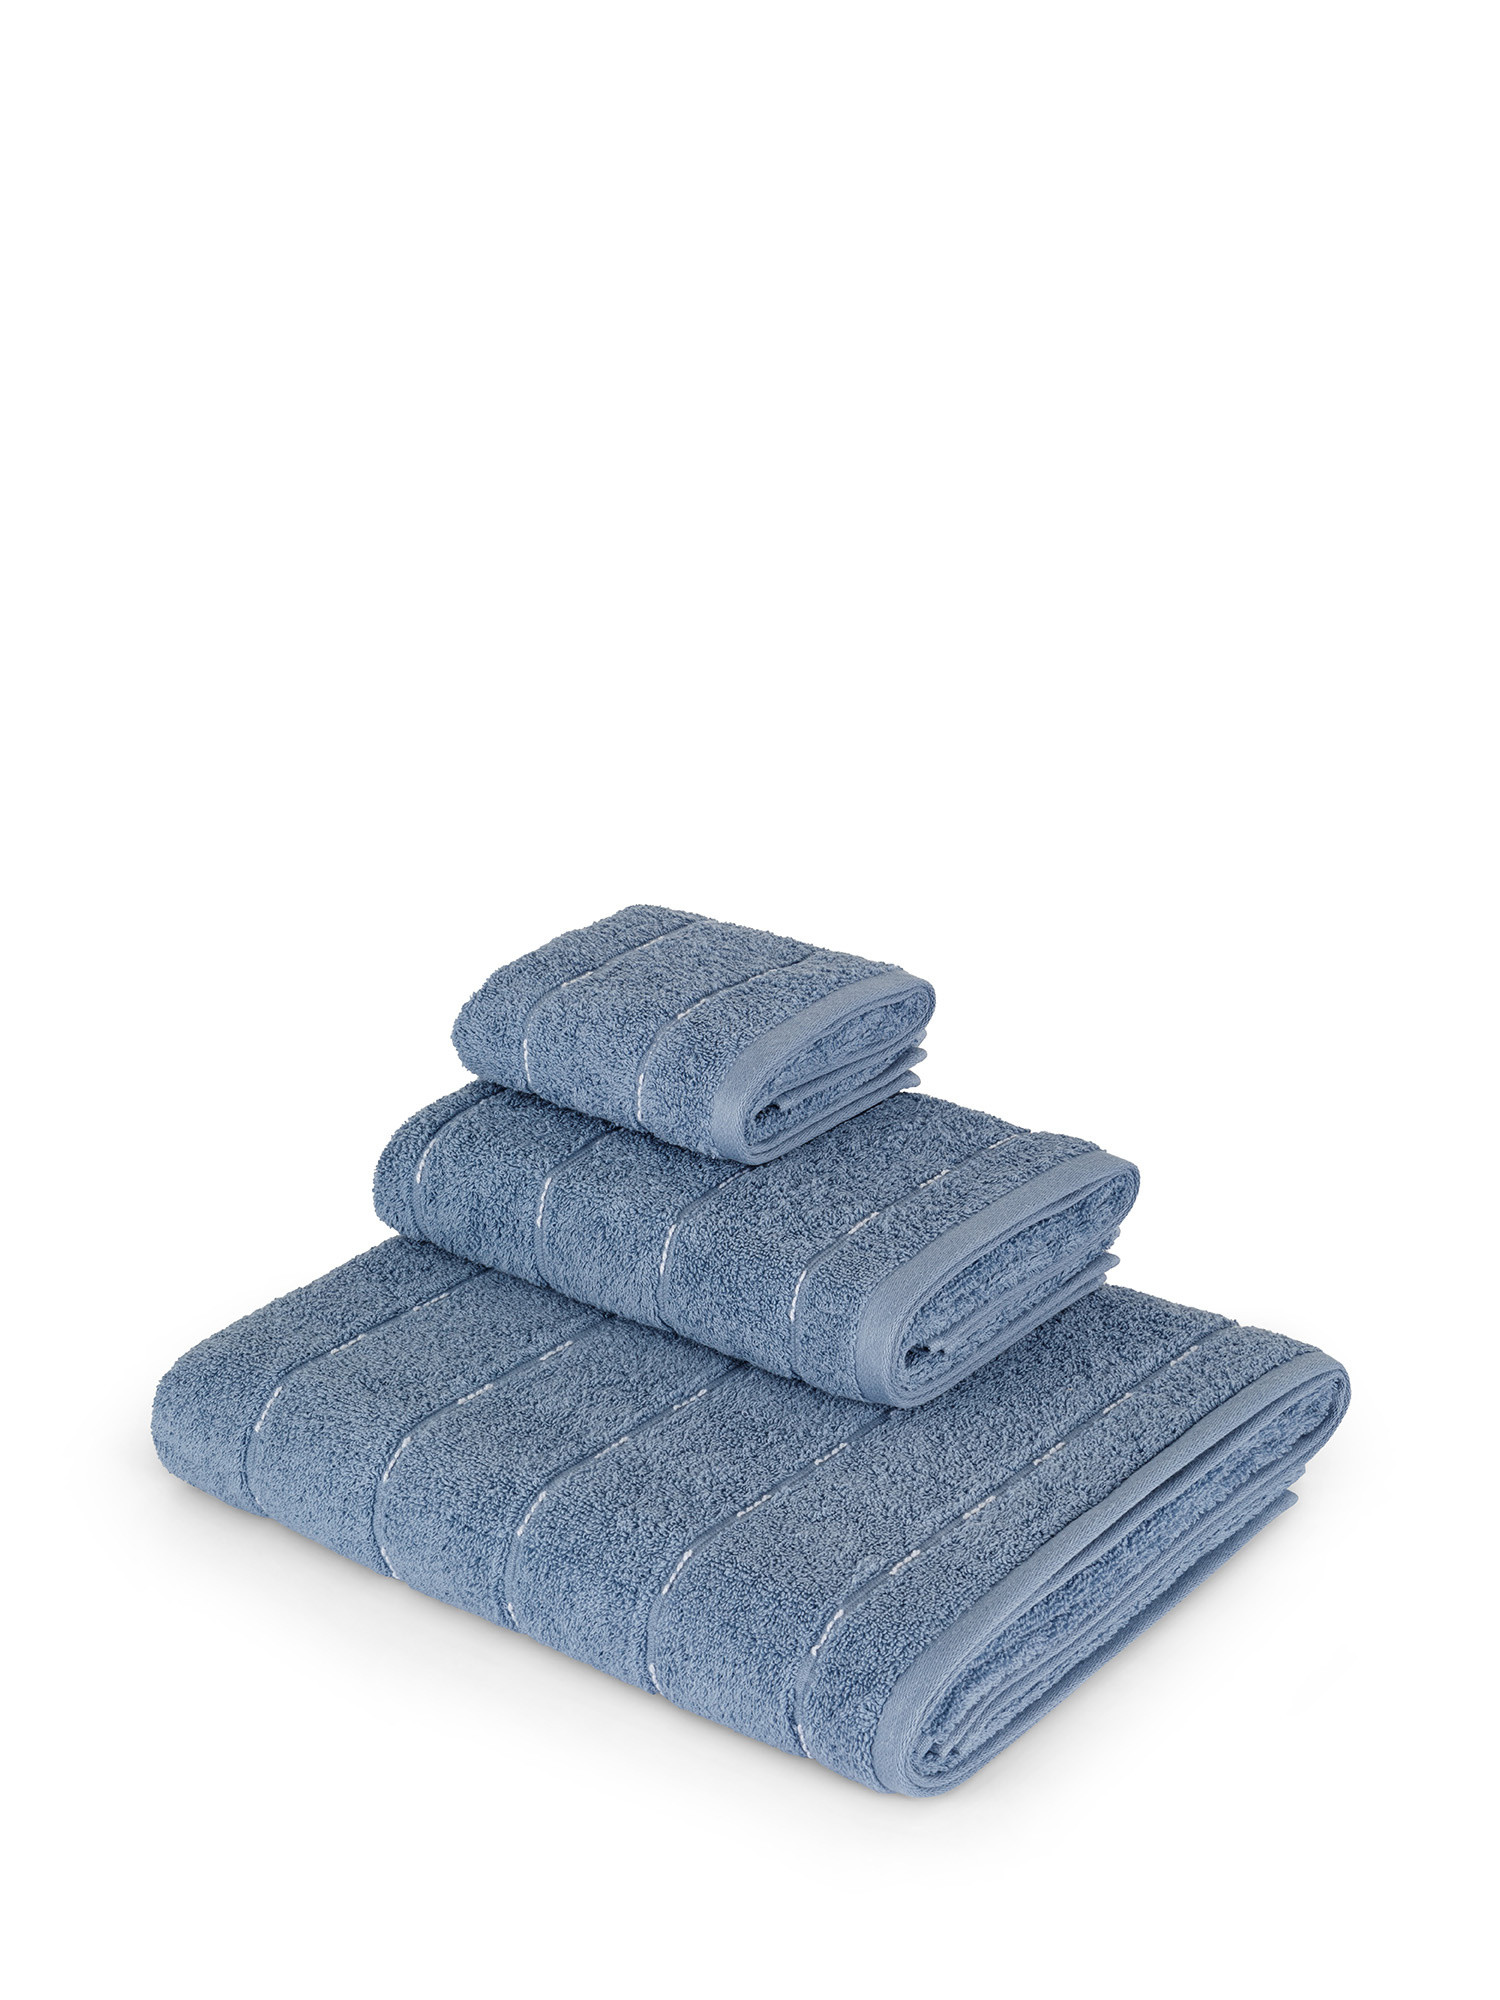 Asciugamano di puro cotone tinto in filo effetto impuntura, Blu, large image number 0